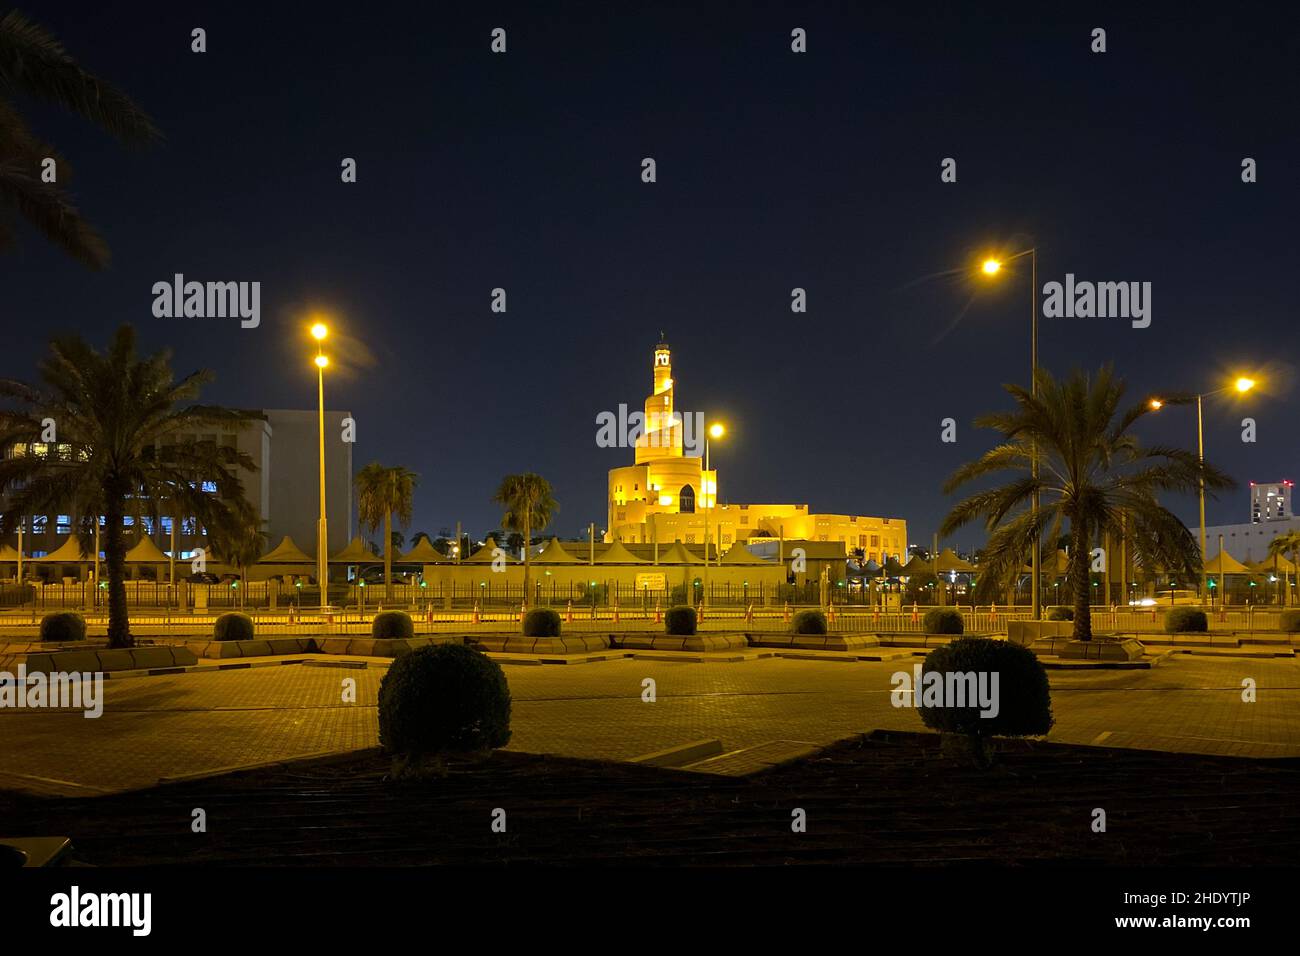 Paysage urbain de la vieille ville de Doha, Qatar avec le bâtiment Al Fanal et le Centre culturel islamique du Qatar contre le ciel sombre la nuit Banque D'Images